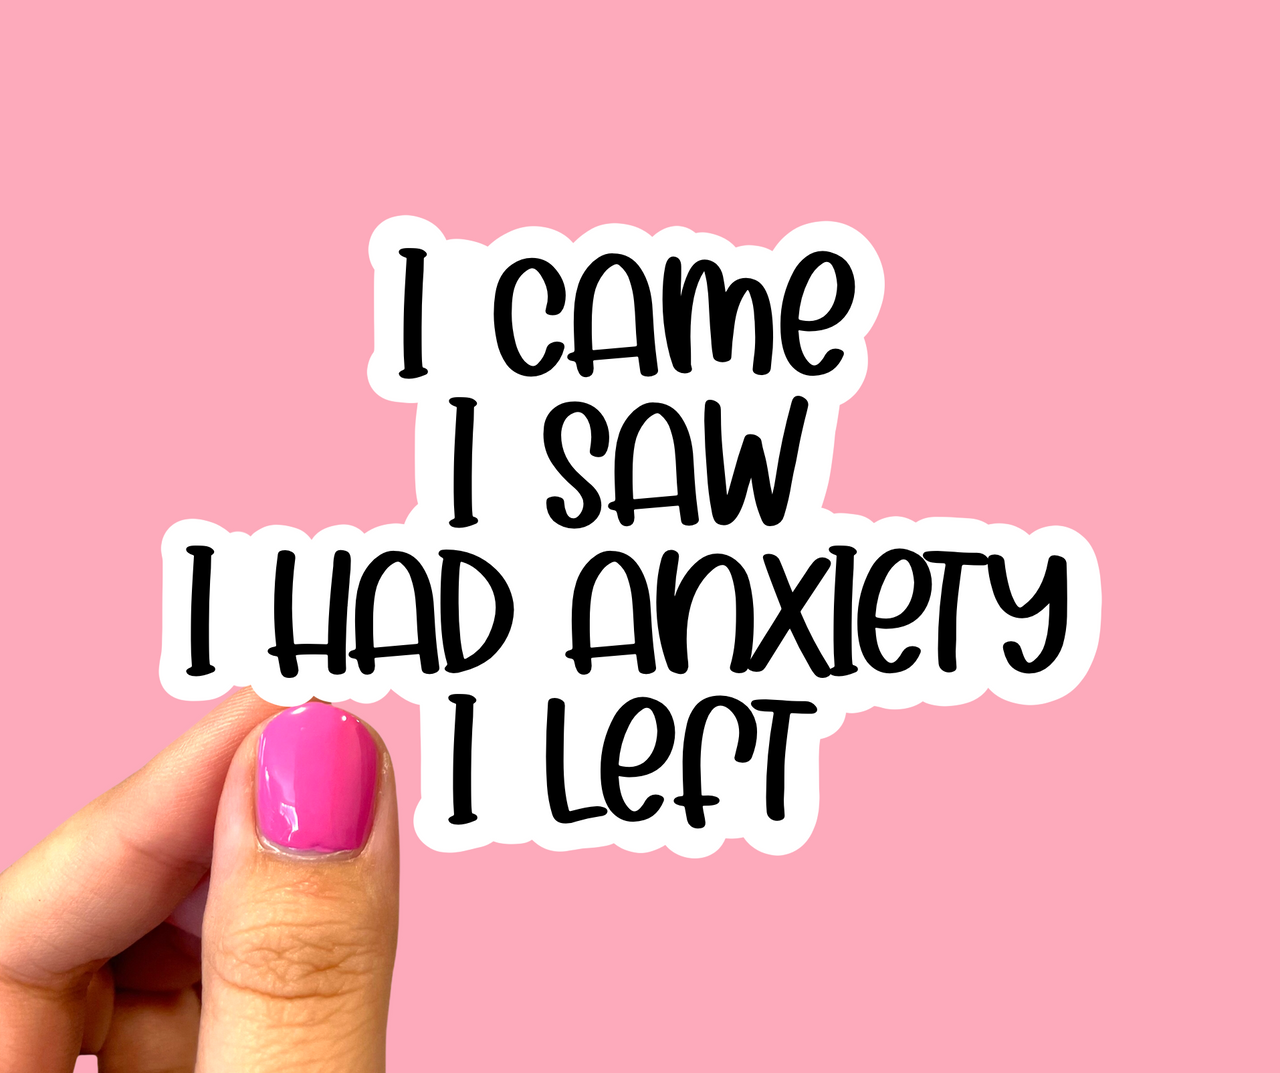 I came I saw I had anxiety I left